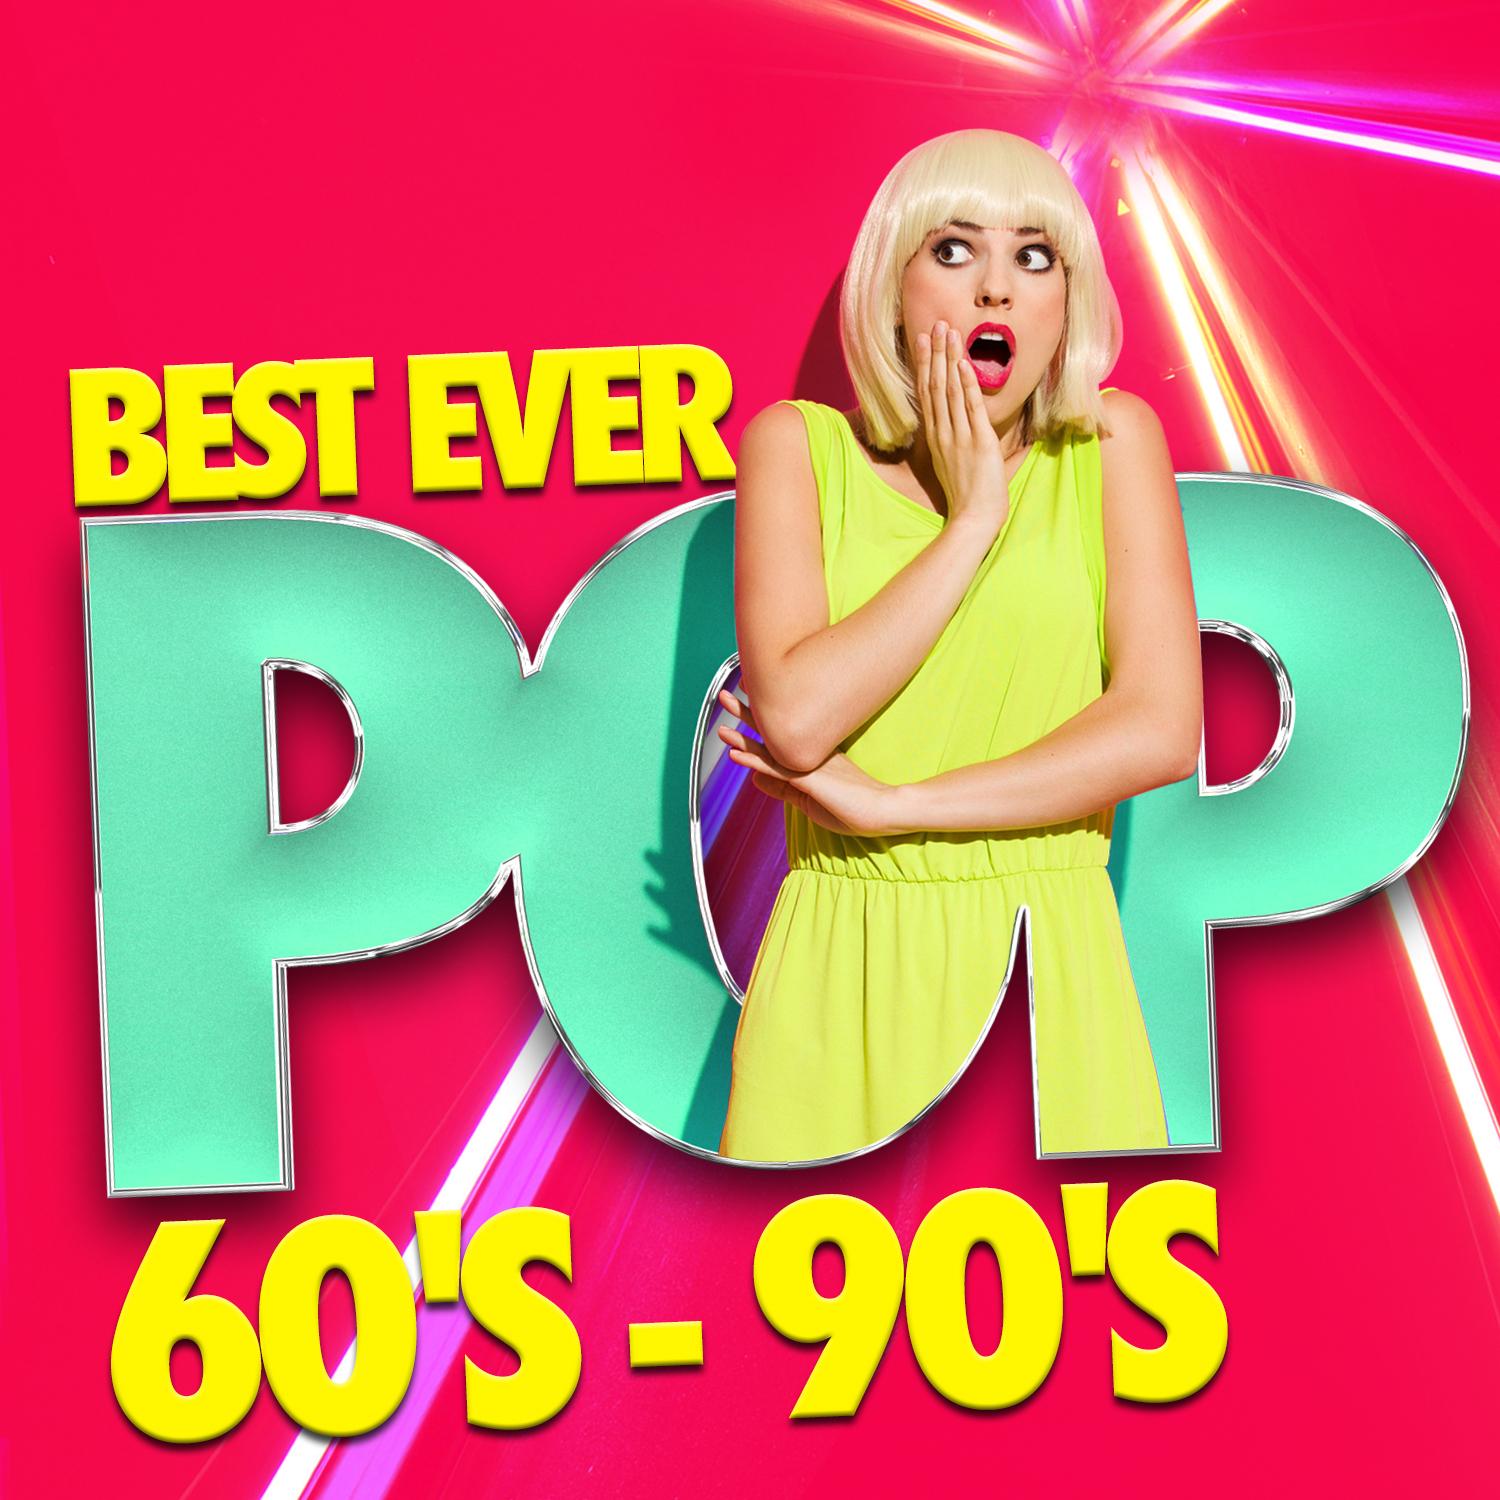 Best Ever Pop: 60's - 90's